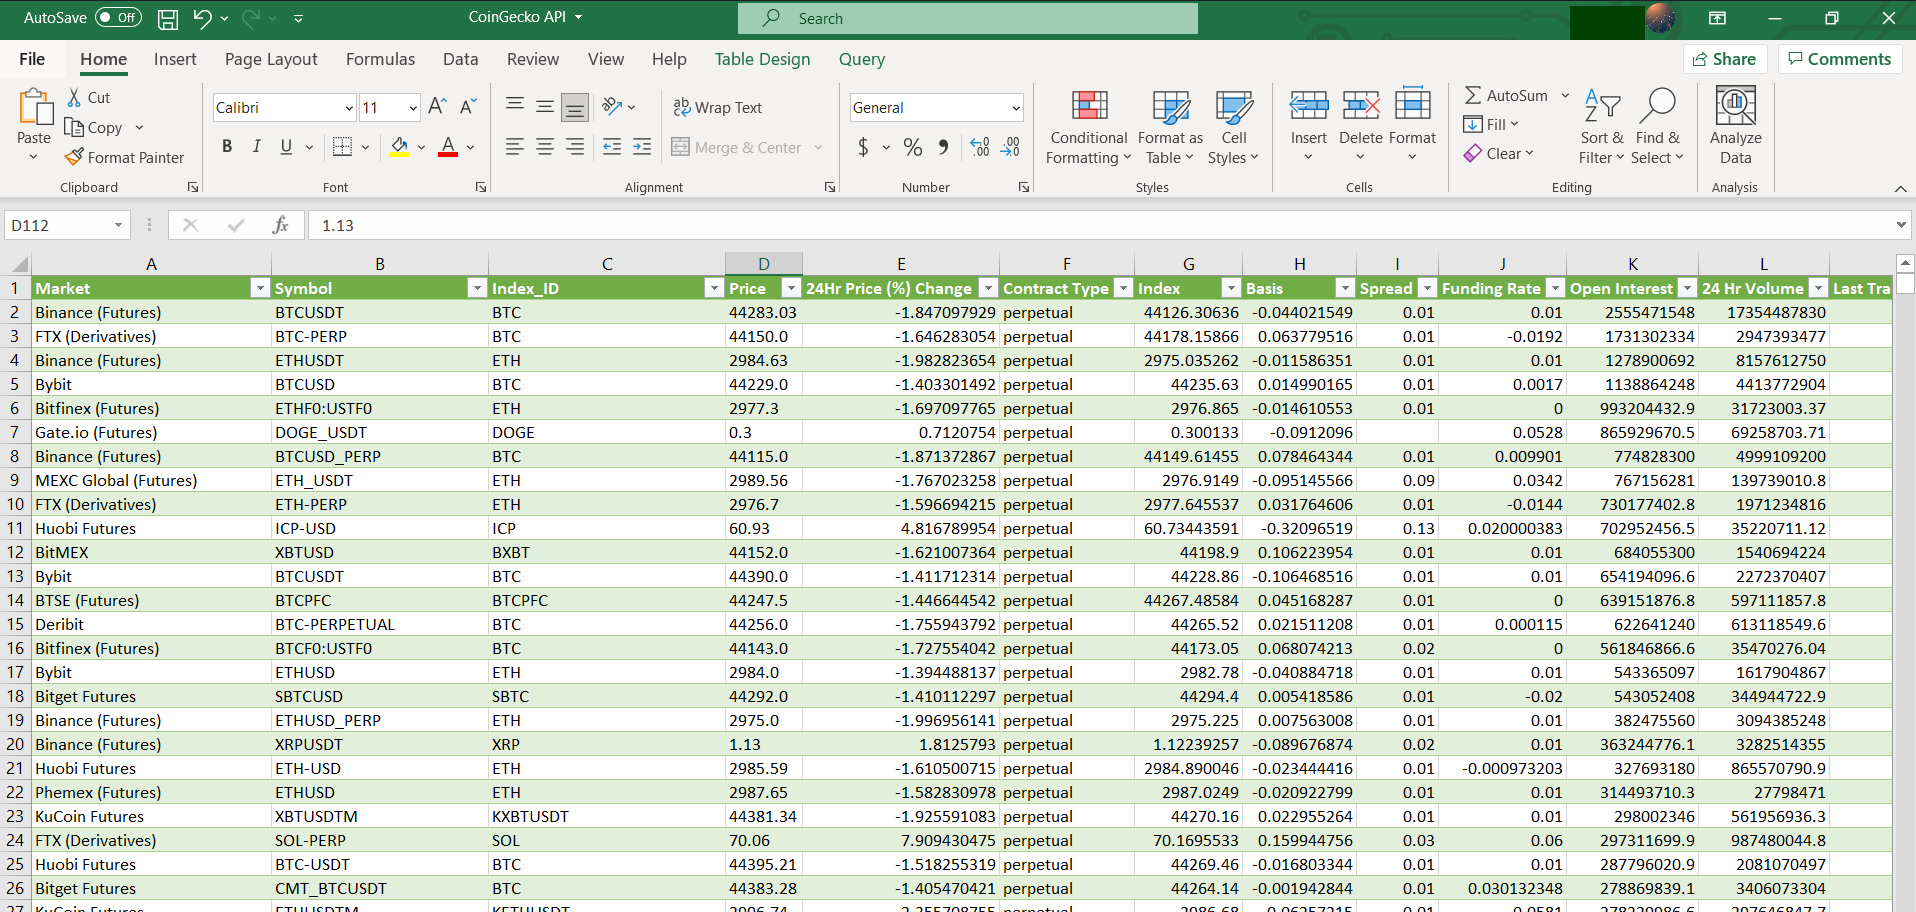 A sample portfolio tracker built using Microsoft Excel with CoinGecko's API